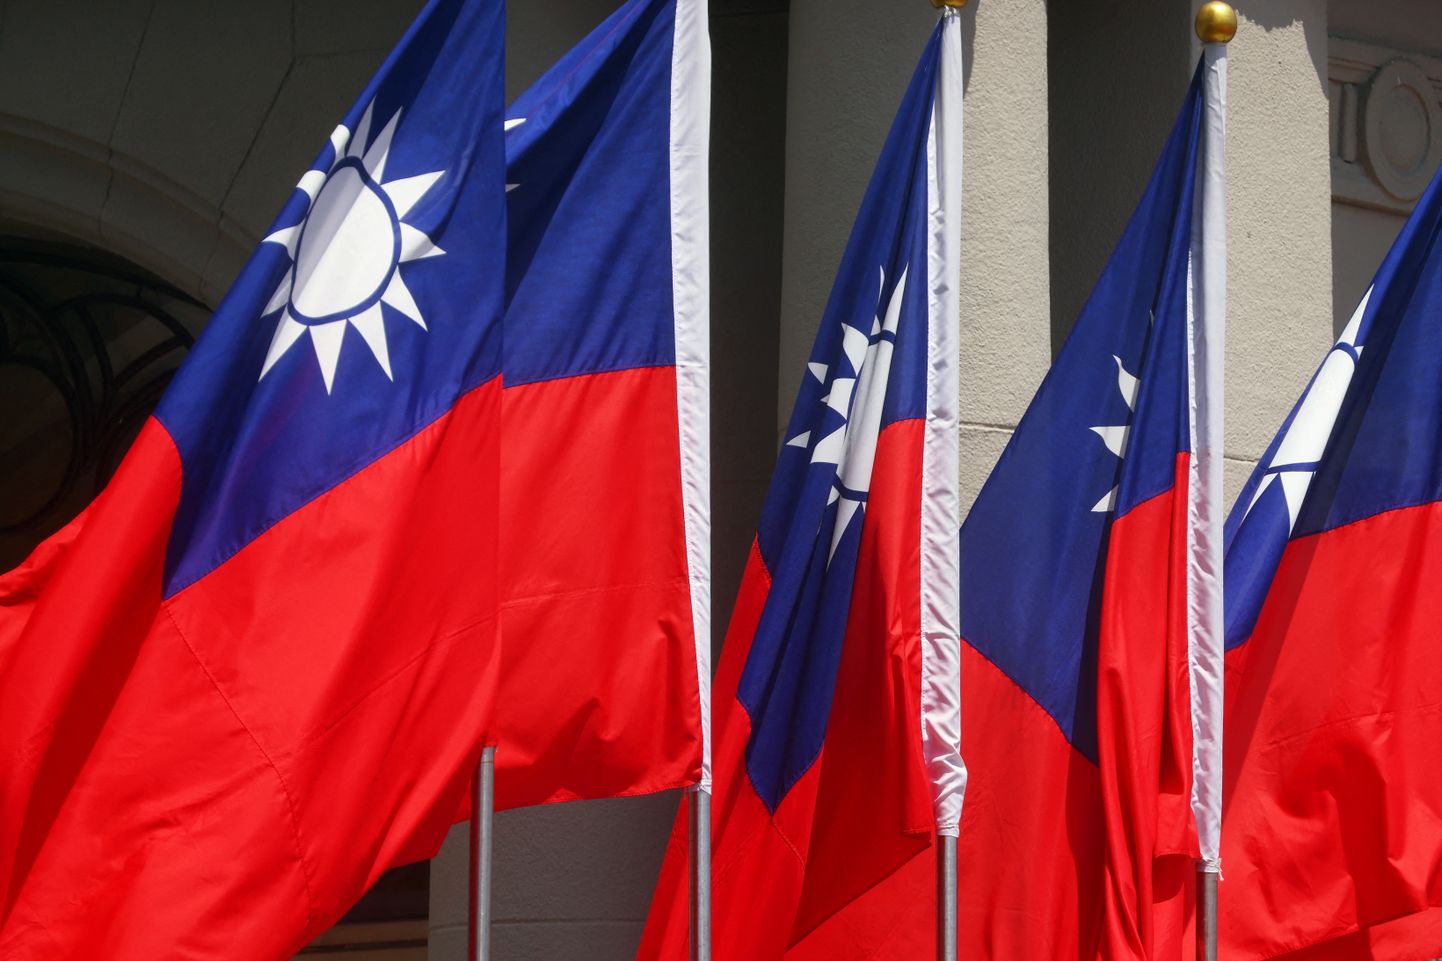 Taiwani lipud.